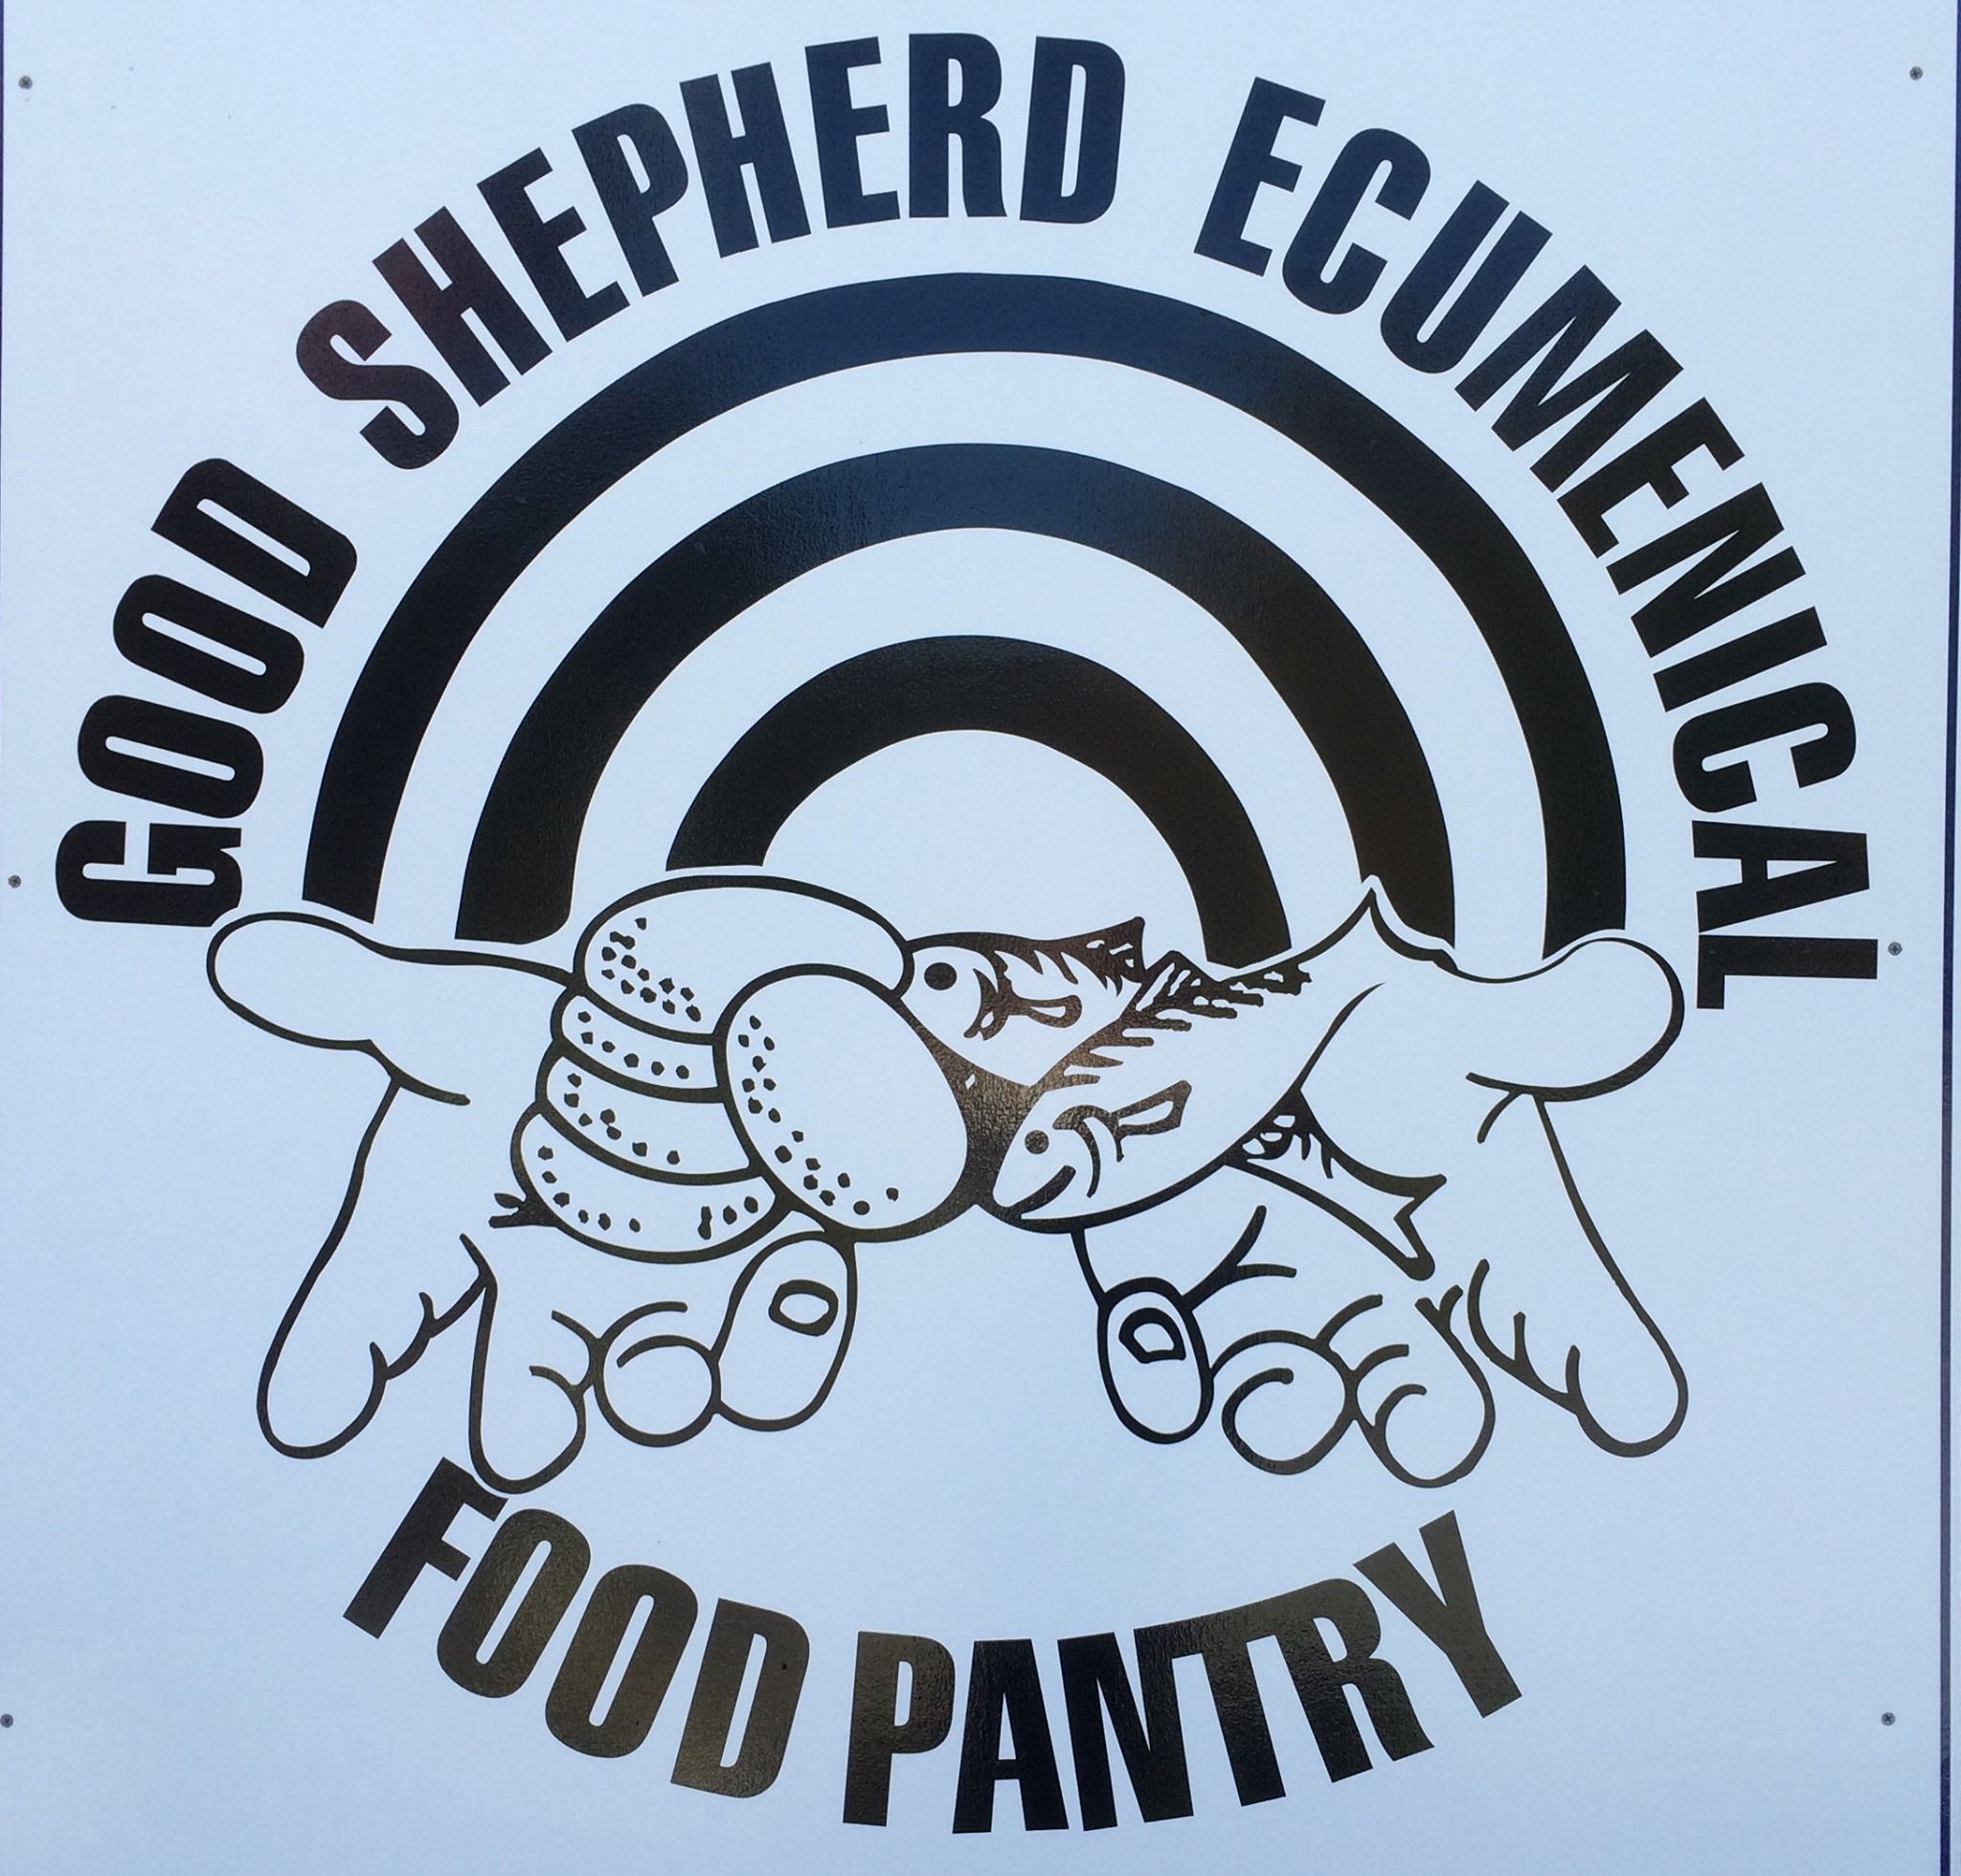 Good Shepherd Ecumenical Food Pantry 